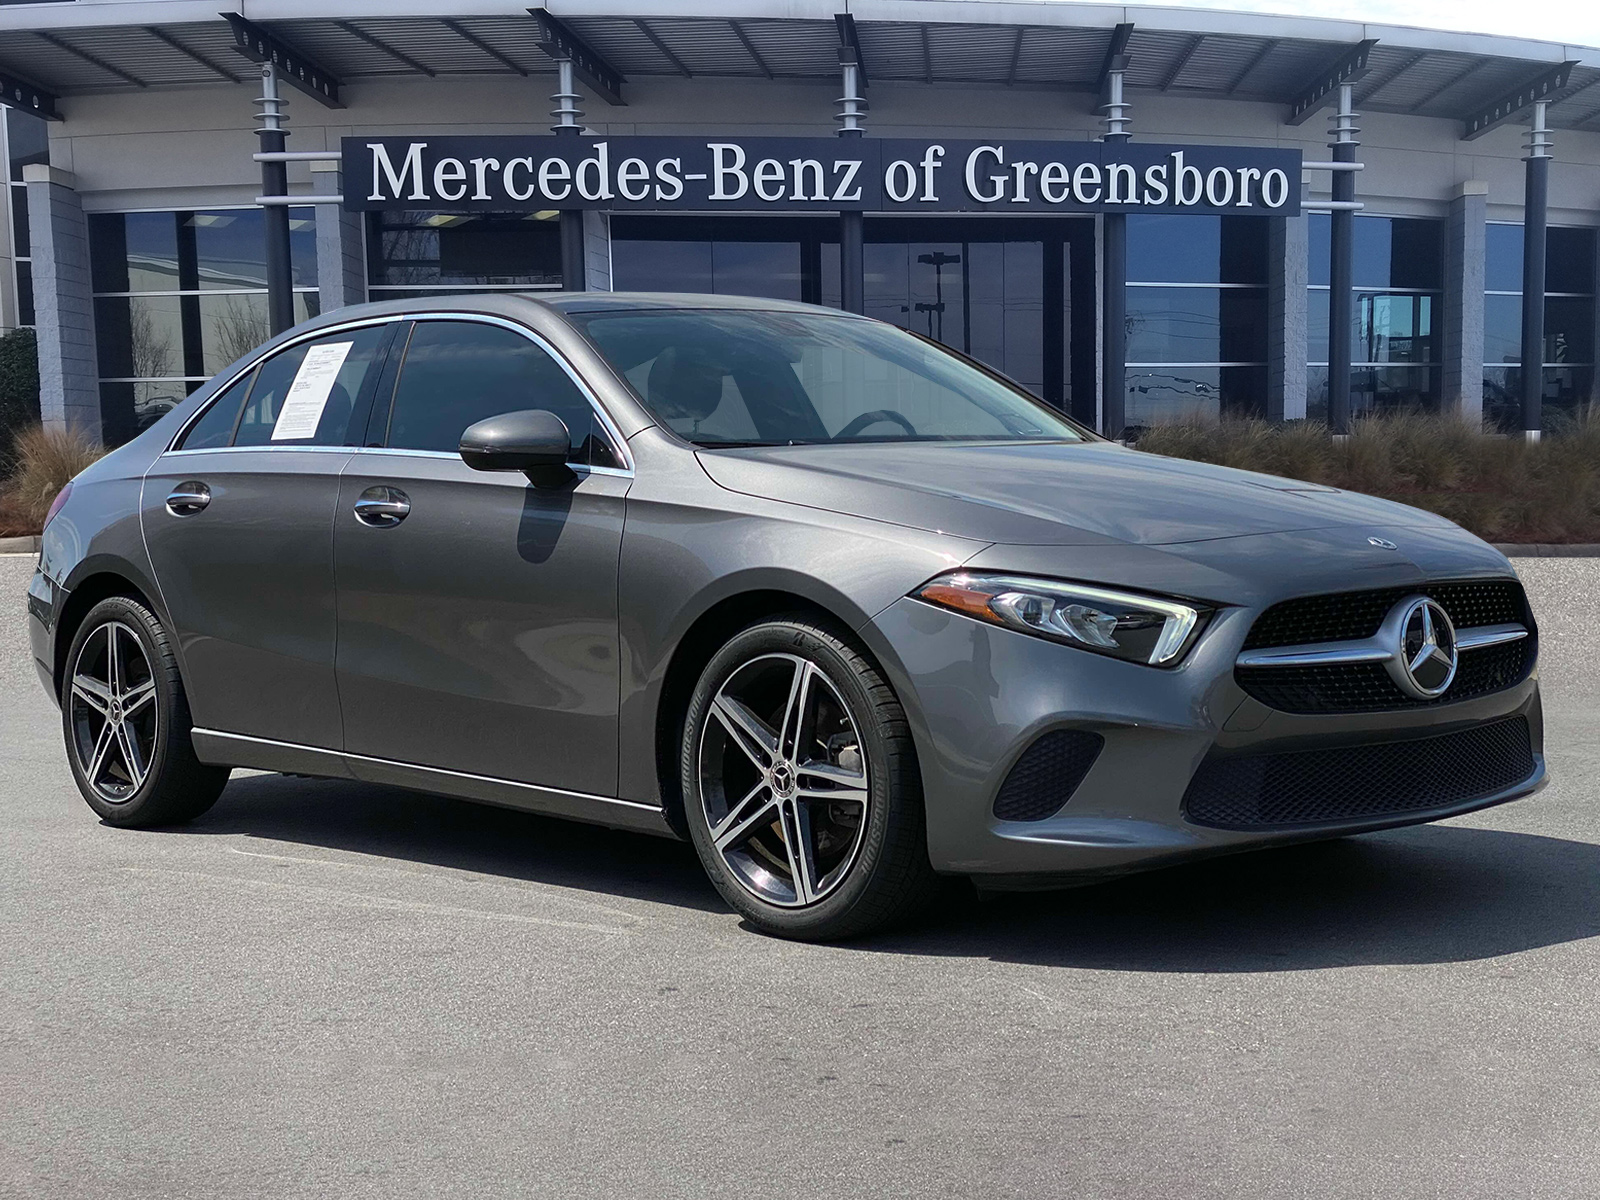 2021 Mercedes-Benz A-Class Greensboro NC